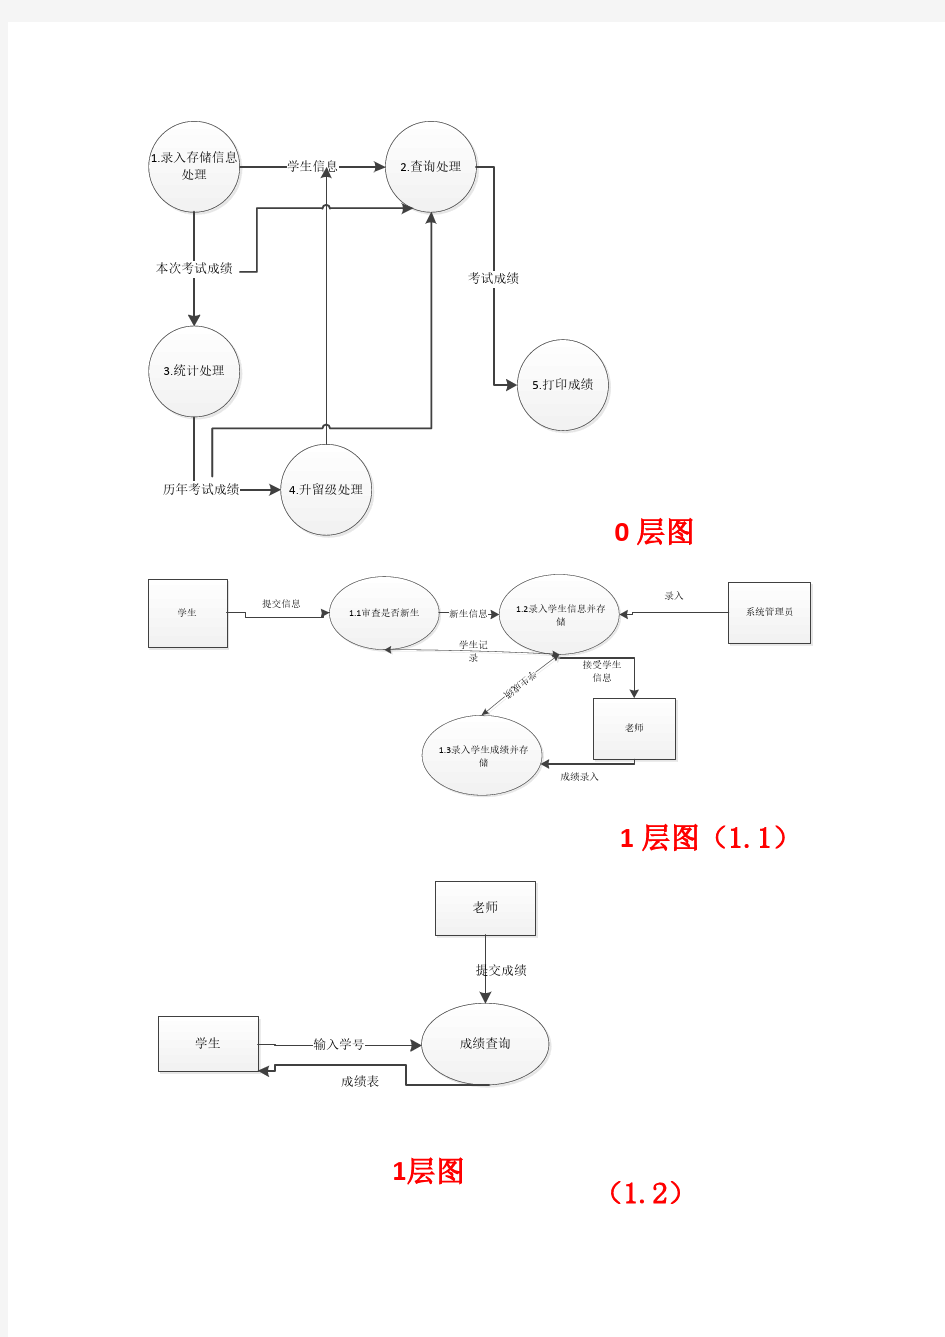 学生管理系统结构类图